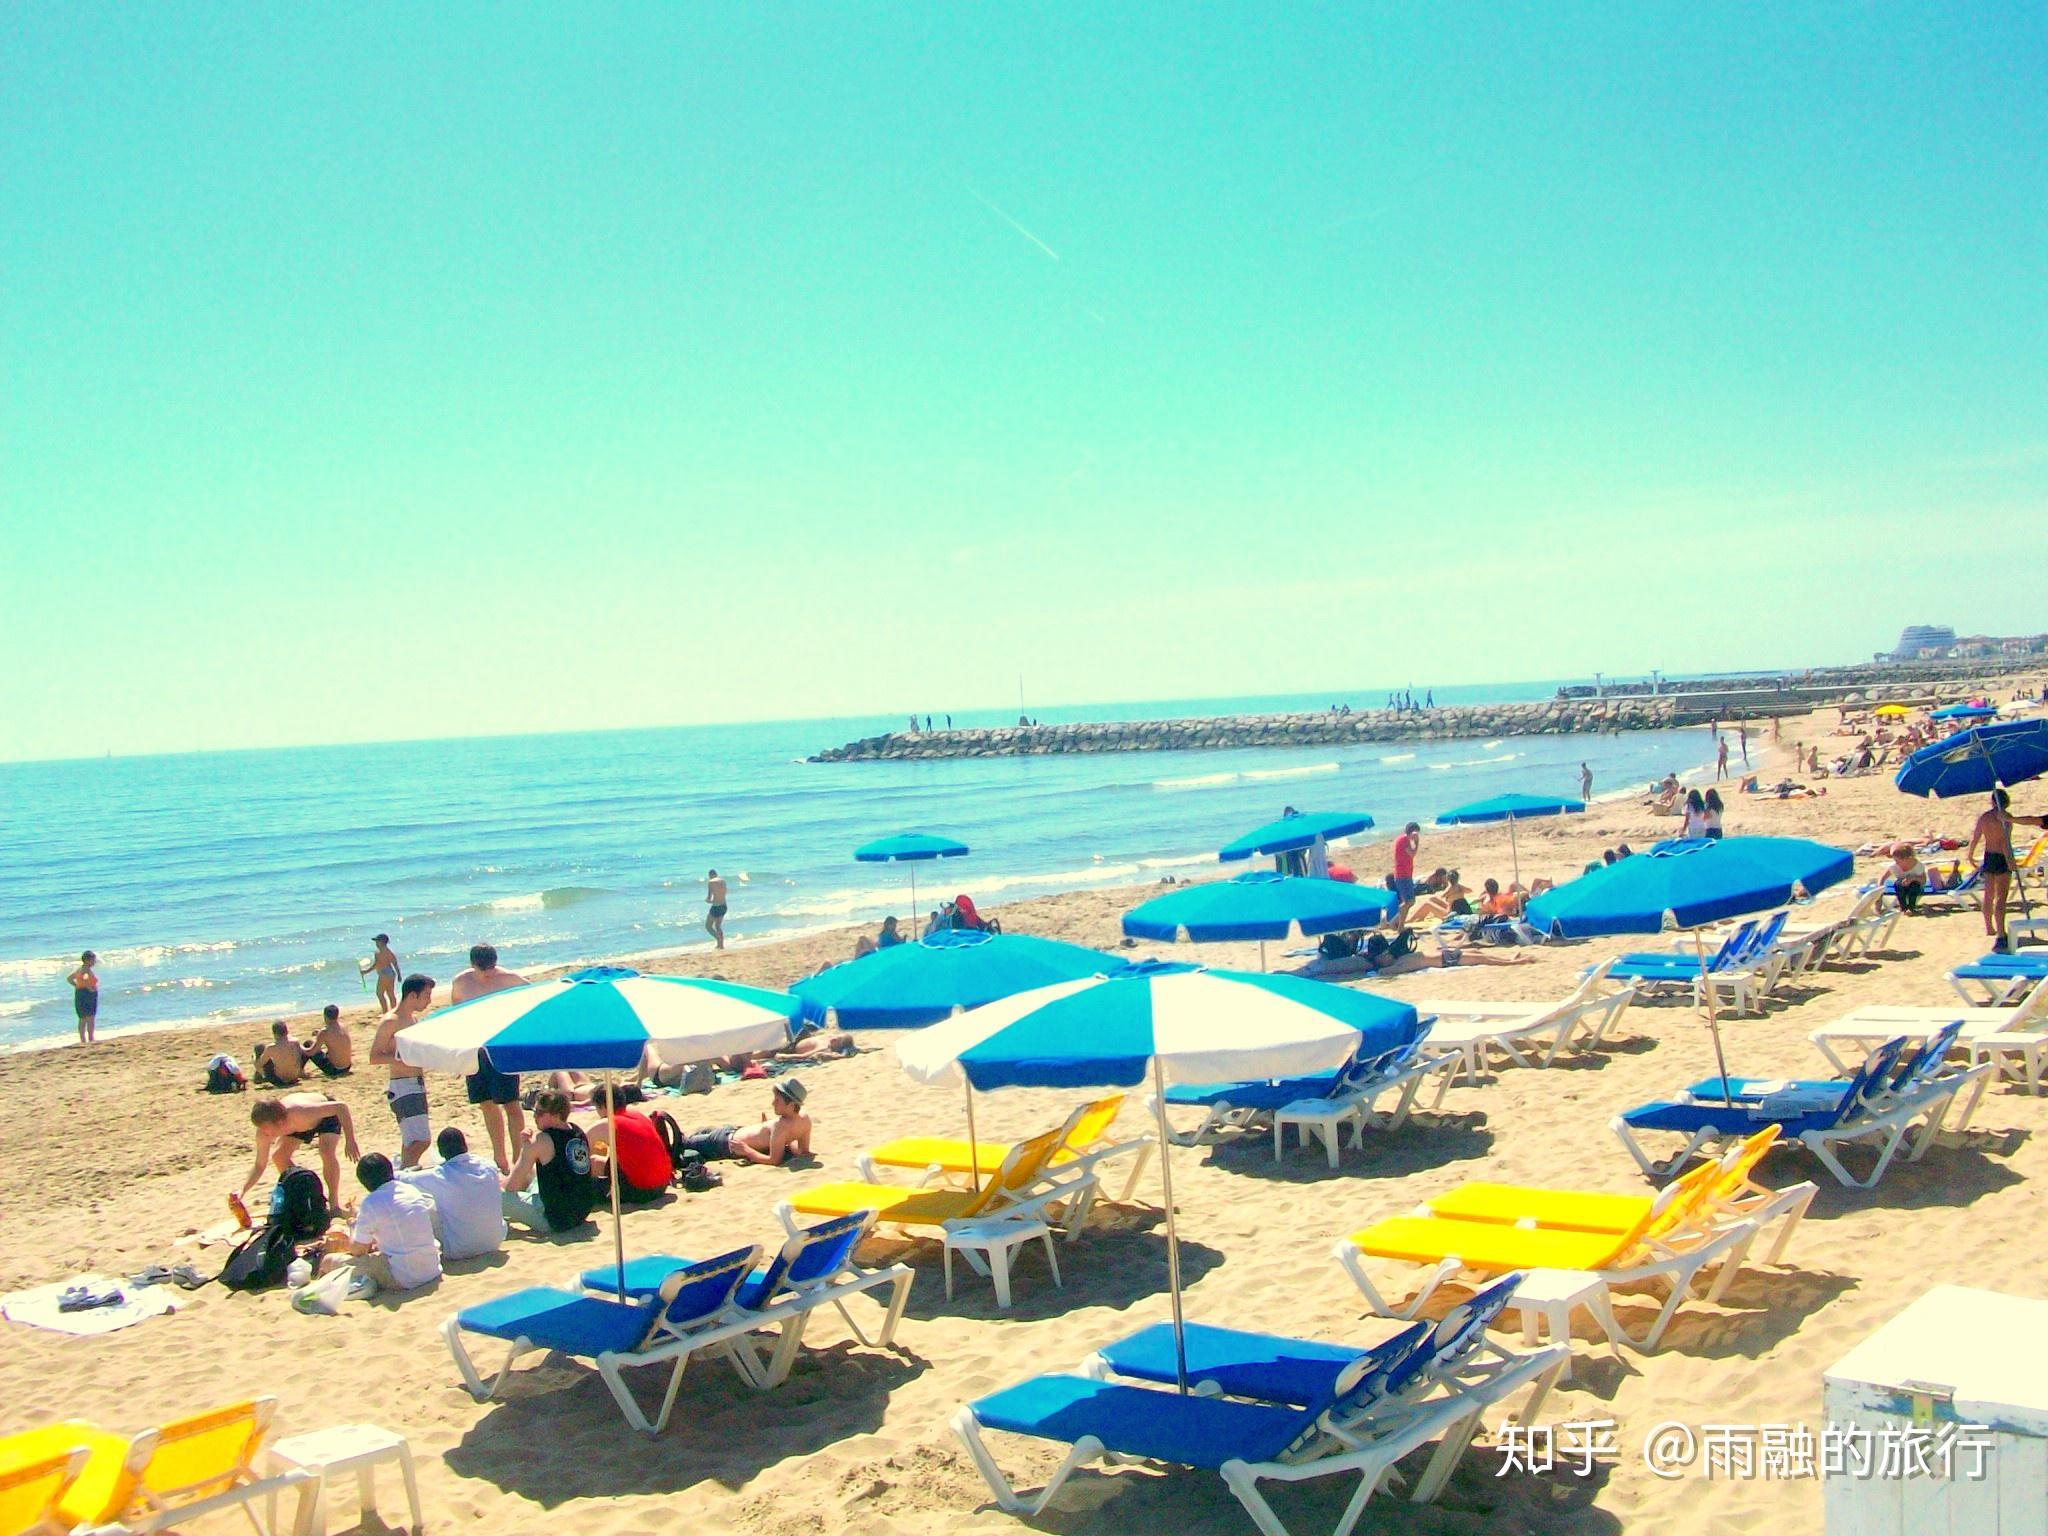 裸体海滩发祥国：裸体海滩74个仅西班牙一半，游客却近亿超西班牙 - 知乎